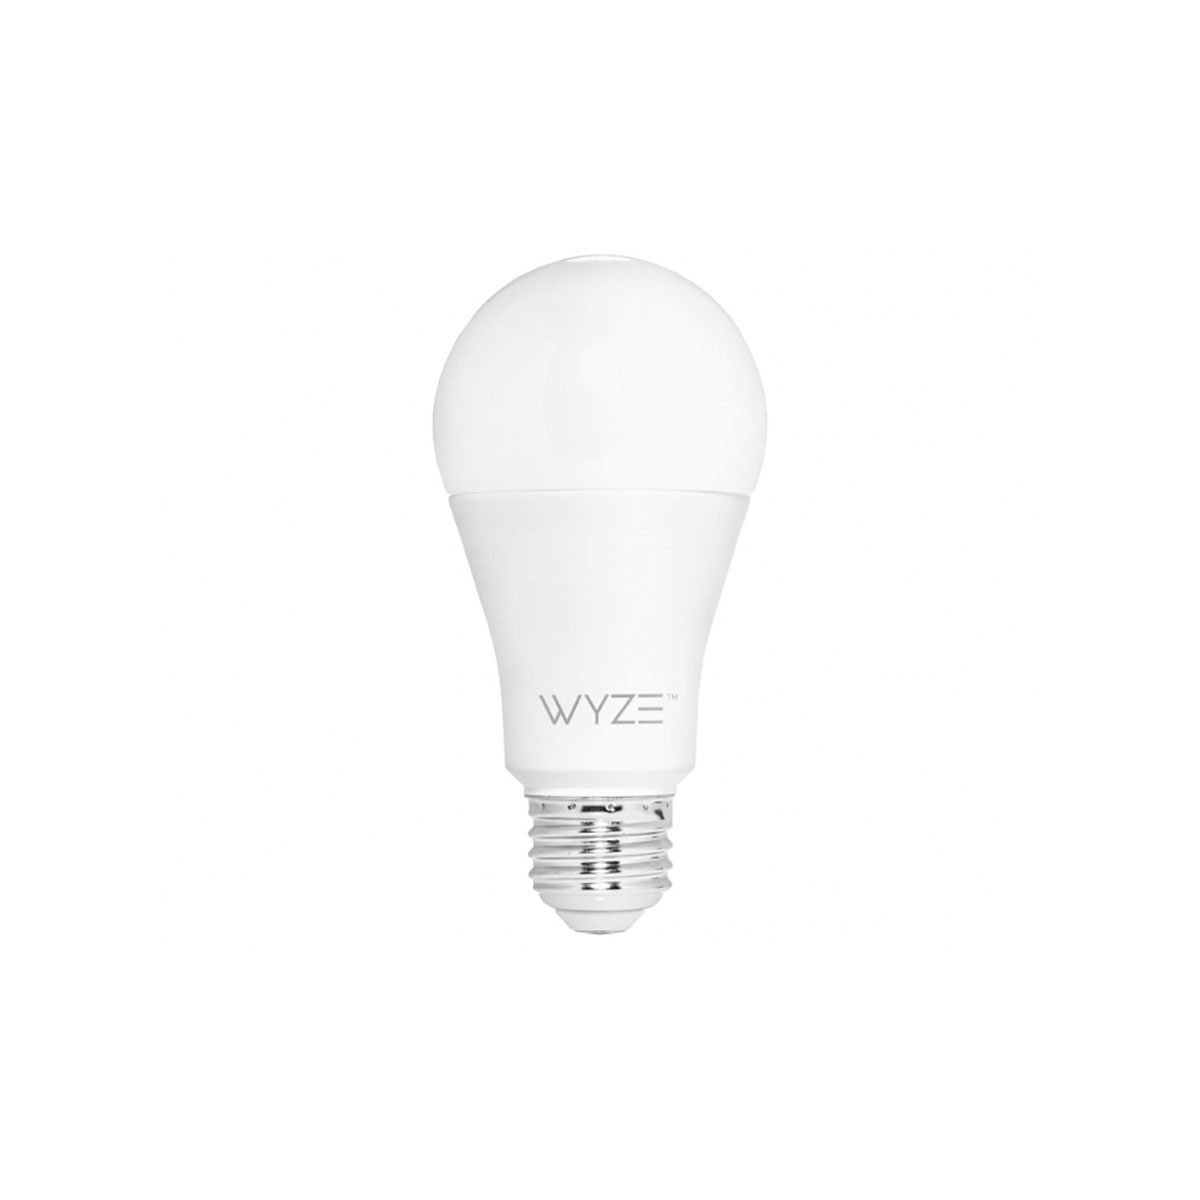 Best Smart Light Bulbs for 2020 | The Family Handyman